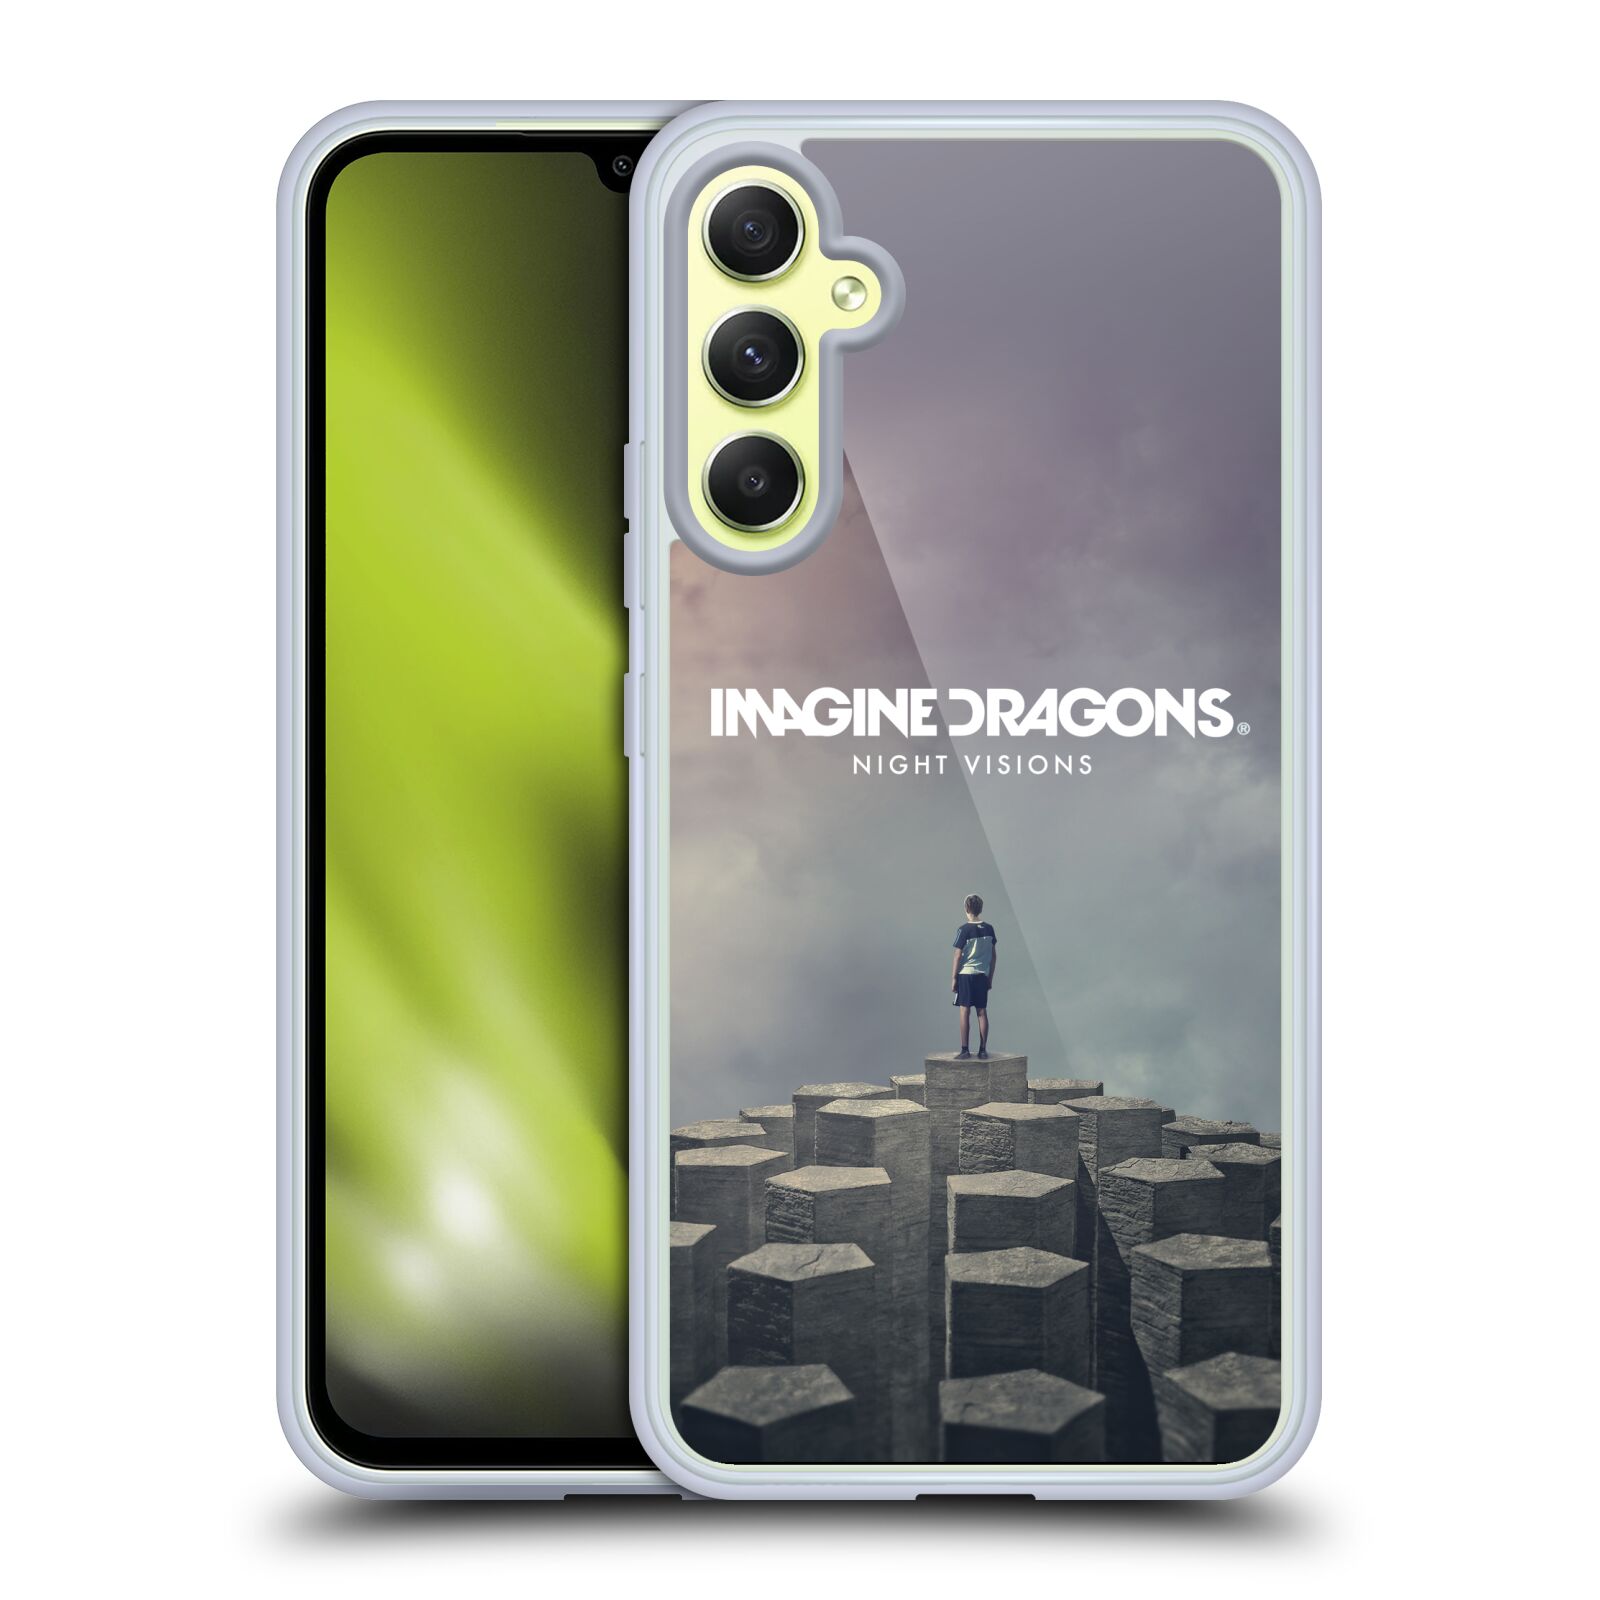 Silikonové pouzdro na mobil Samsung Galaxy A34 5G - Imagine Dragons - Night Visions (Silikonový kryt, obal, pouzdro na mobilní telefon Samsung Galaxy A34 5G s licencovaným motivem Imagine Dragons - Night Visions)